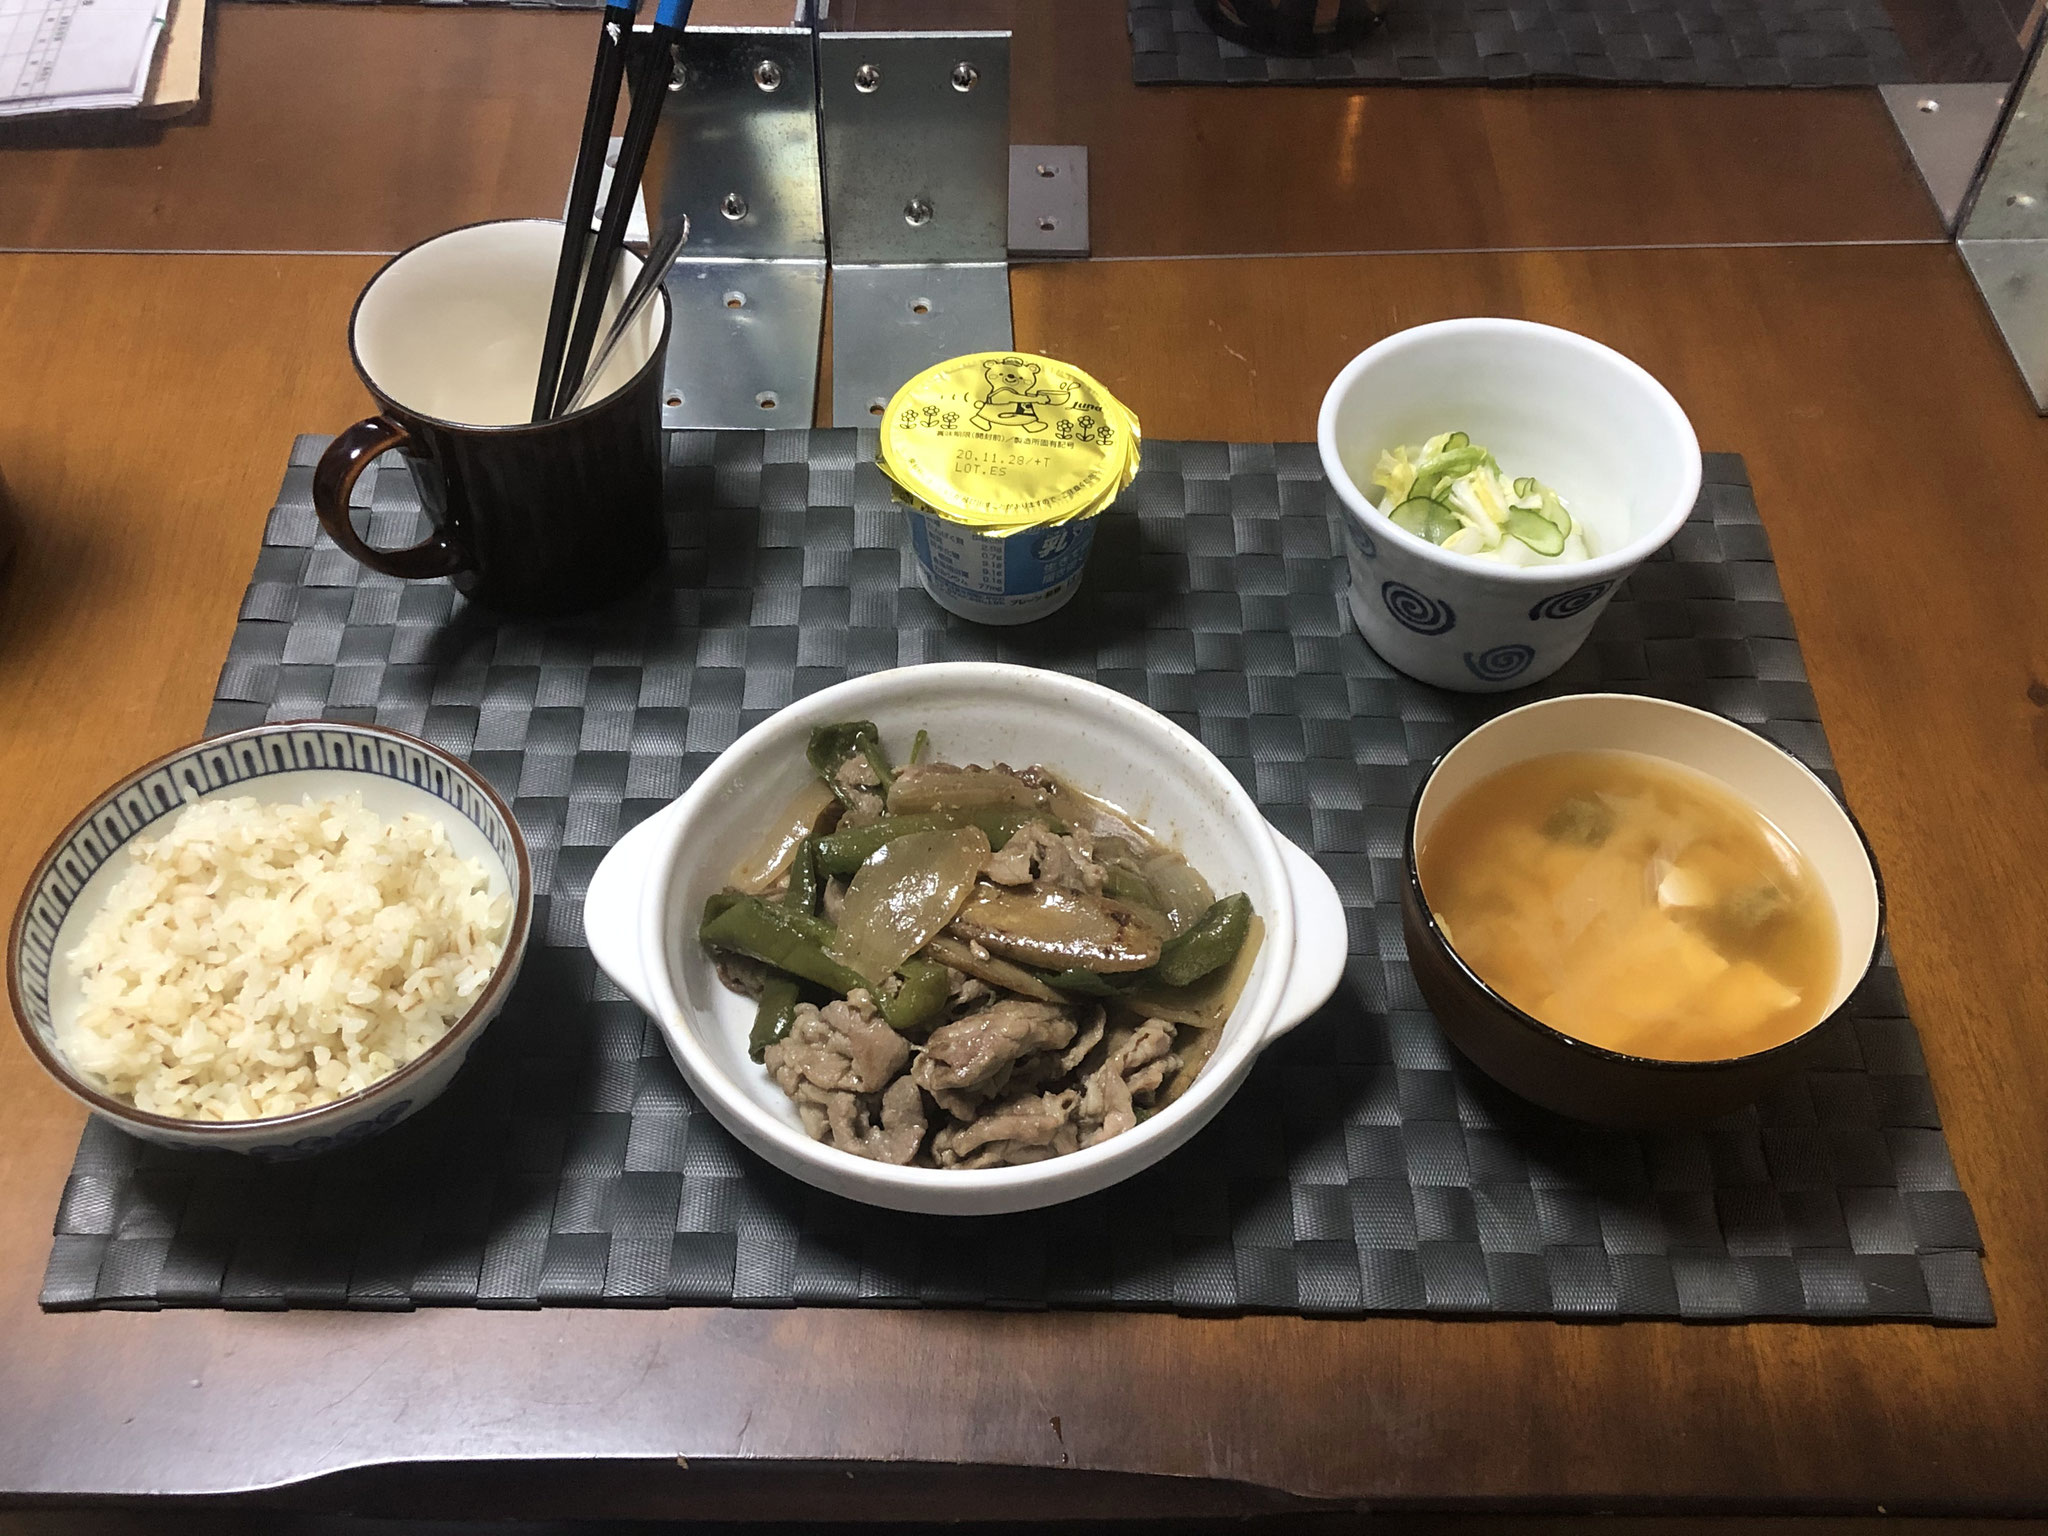 11月12日木曜日、Ohana夕食「豚肉とピーマンとごぼう炒め、みそ汁（ねぎ、とうふ）、白菜ときゅうりの酢の物、ヨーグルト」